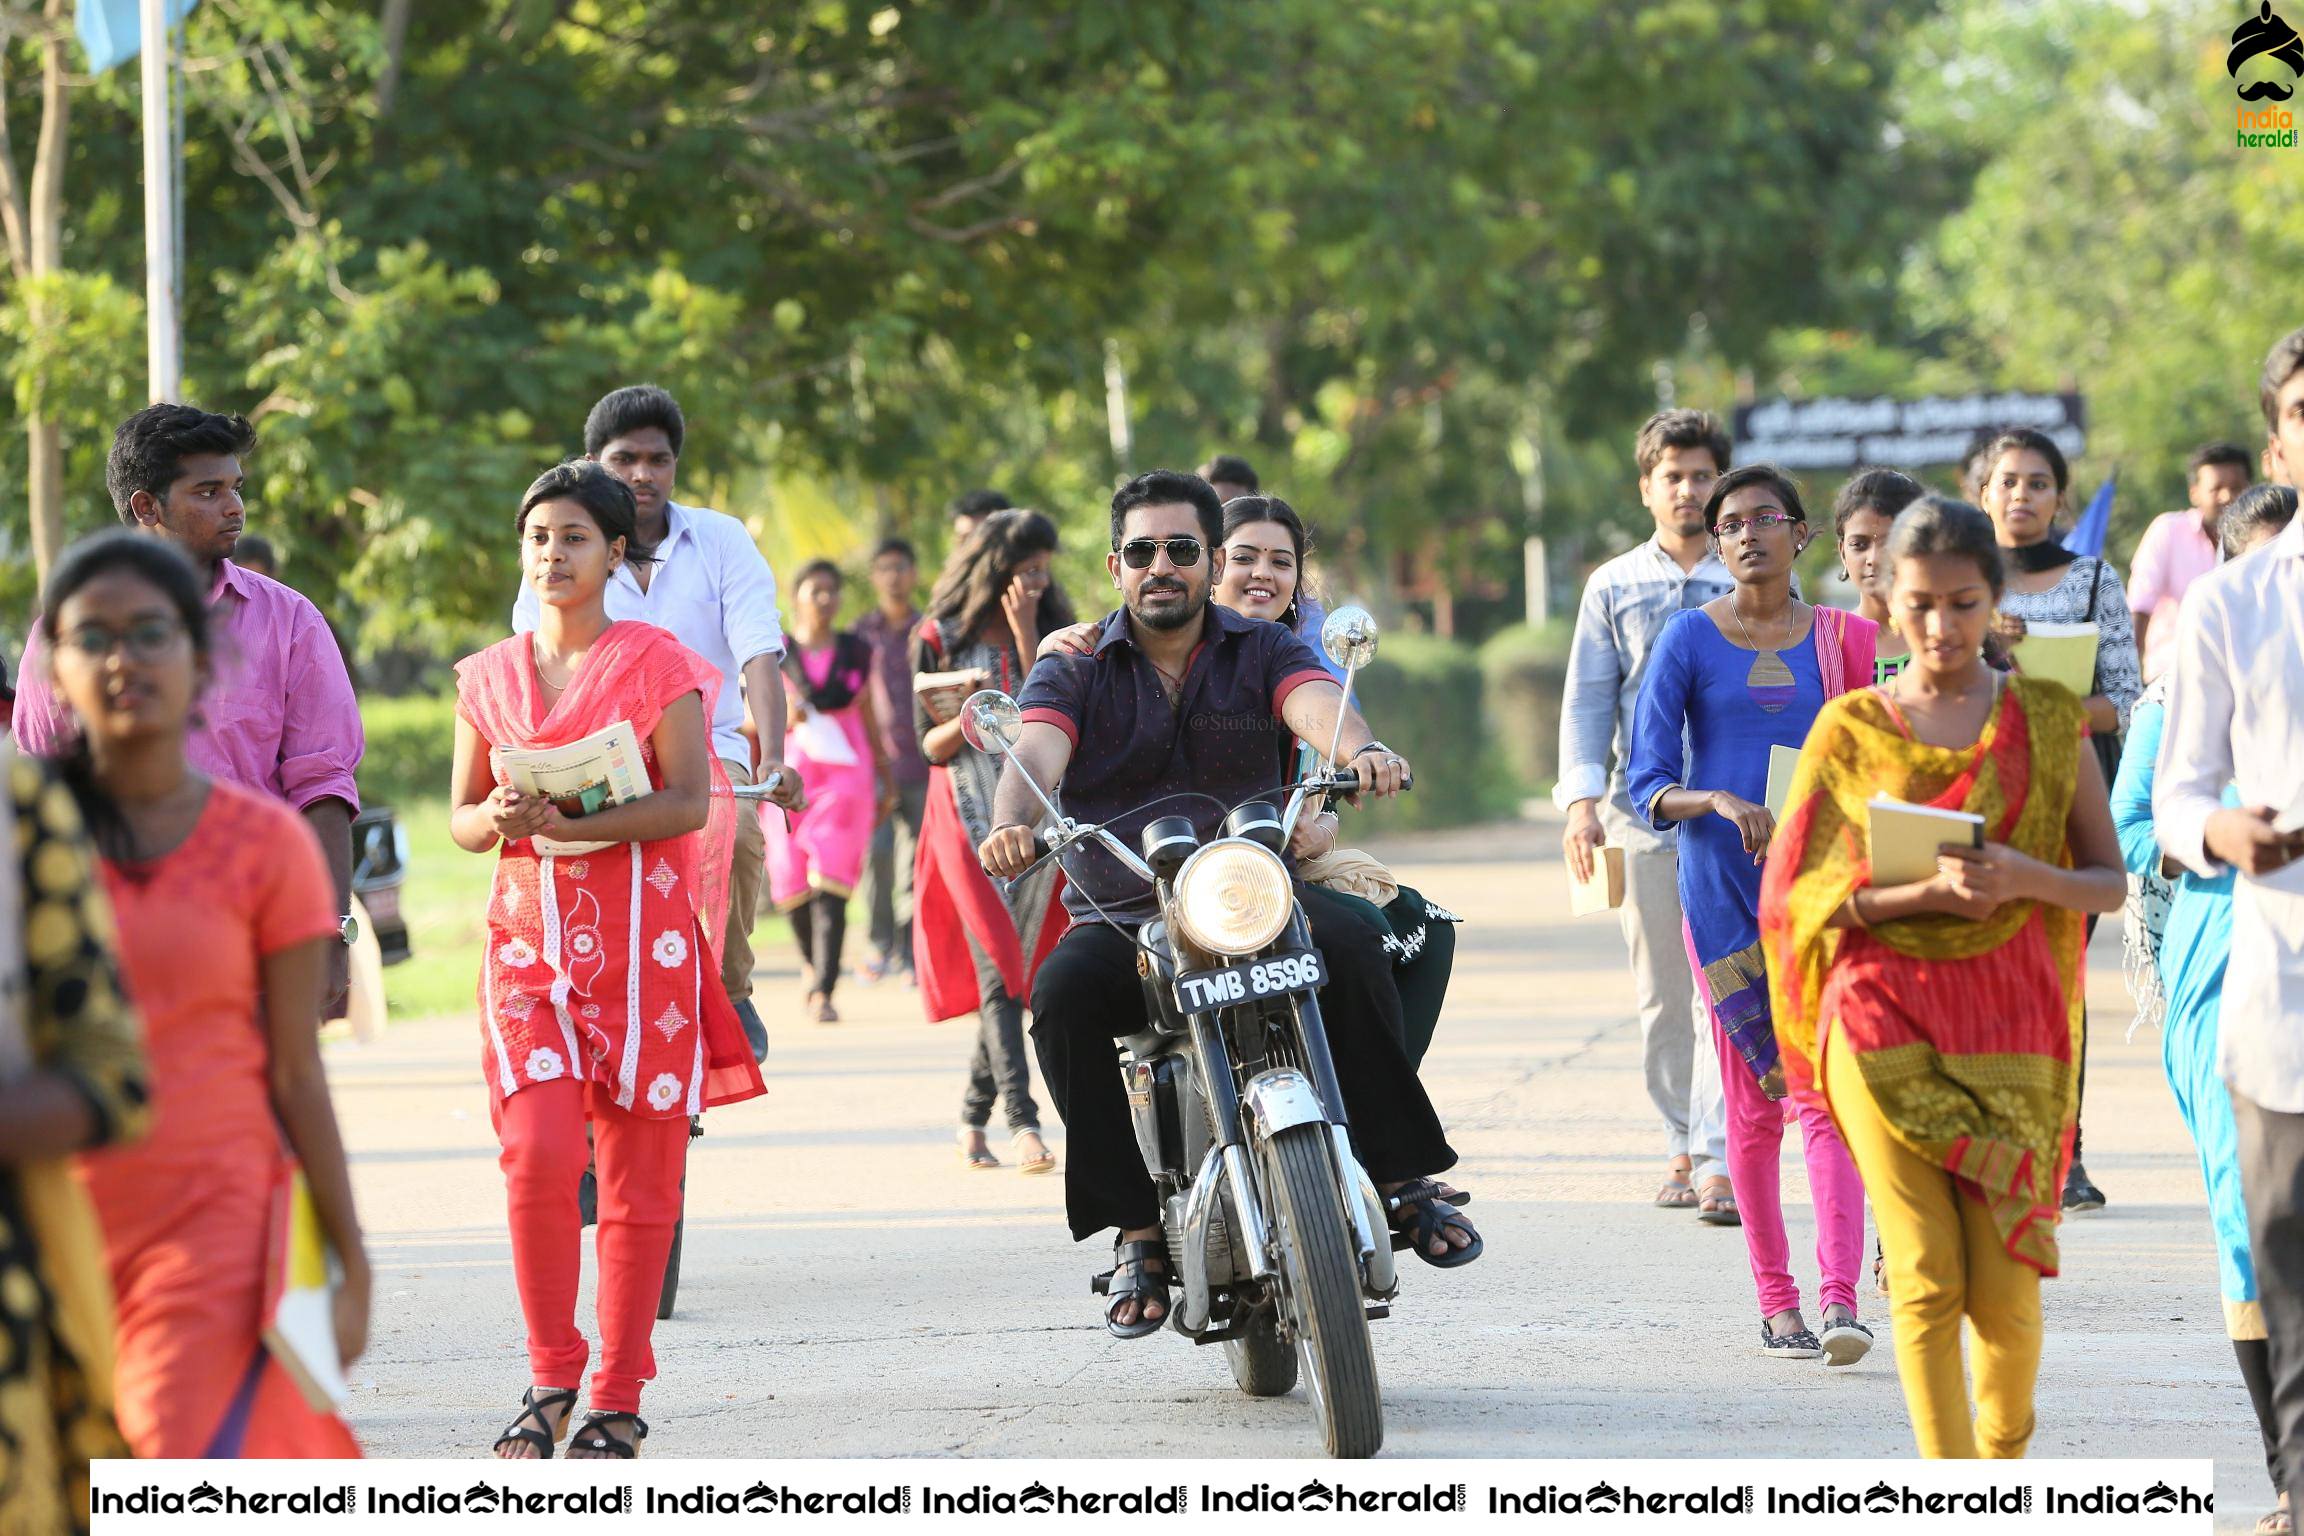 Actor Vijay Antony Photos from Khaali Set 2